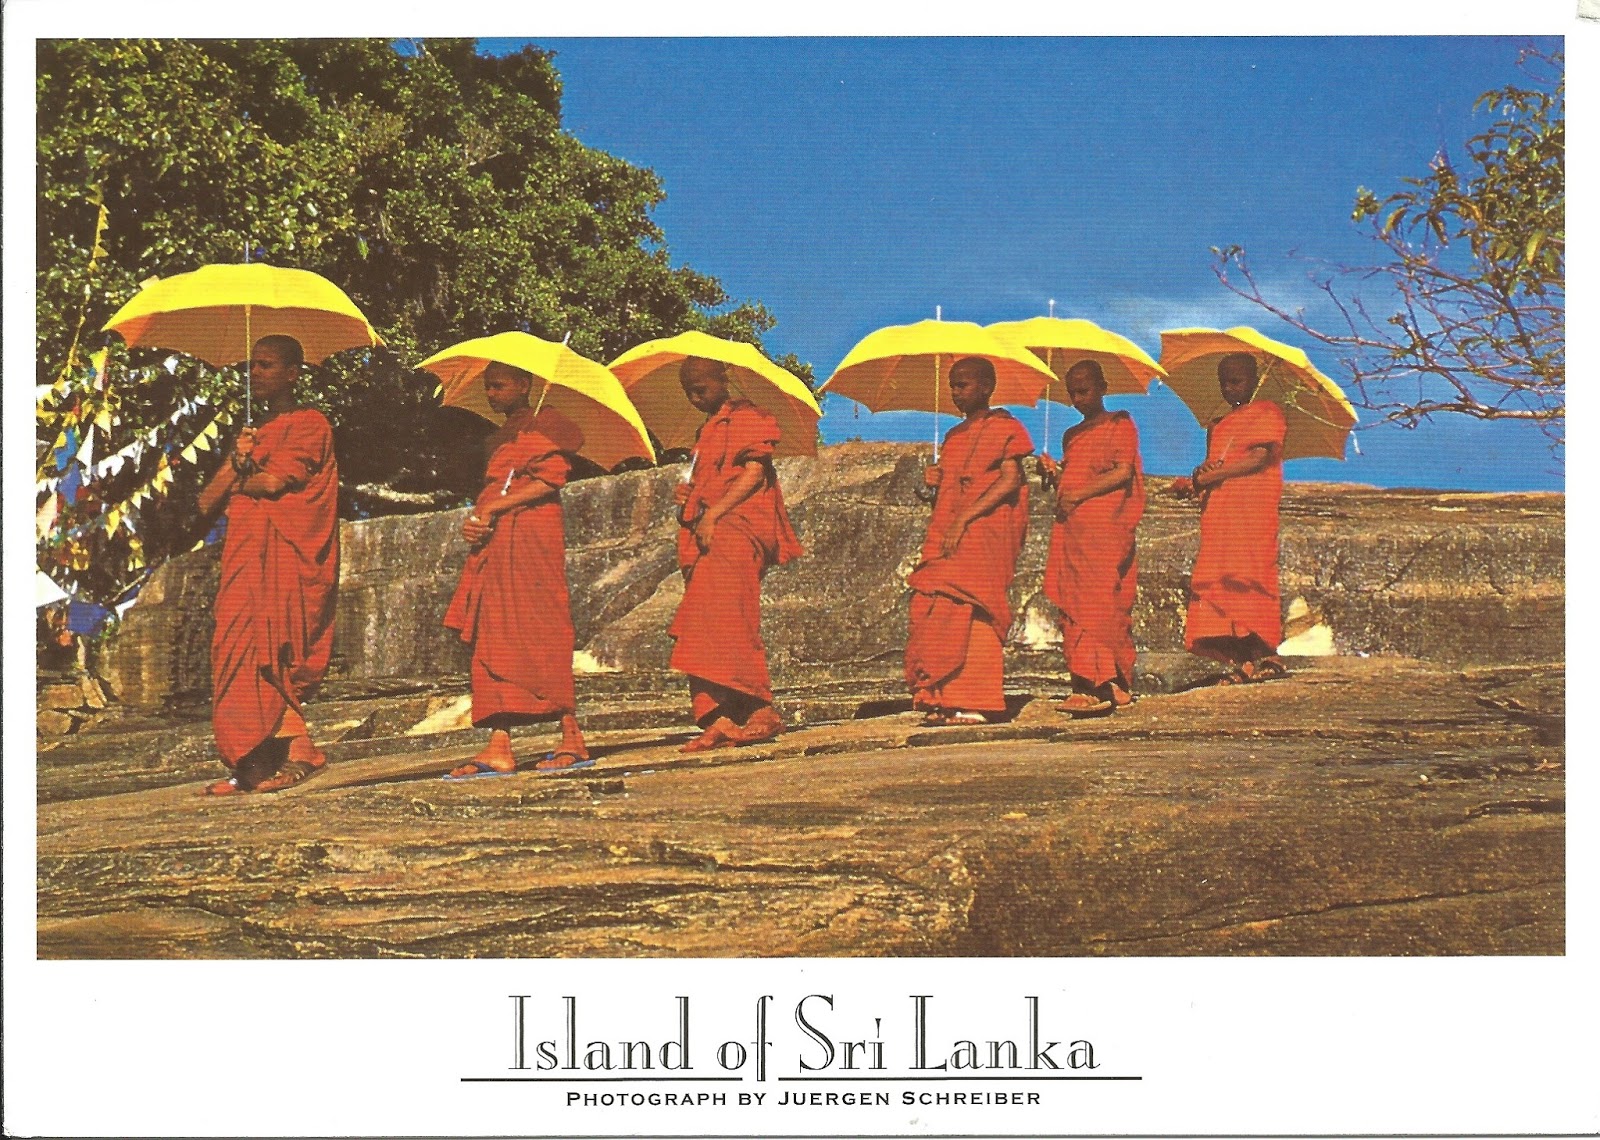 Население страны шри ланка. Сингалы Шри Ланка. Гампаха Шри Ланка. Шри ланкийцы. Шри Ланка население Национальность.